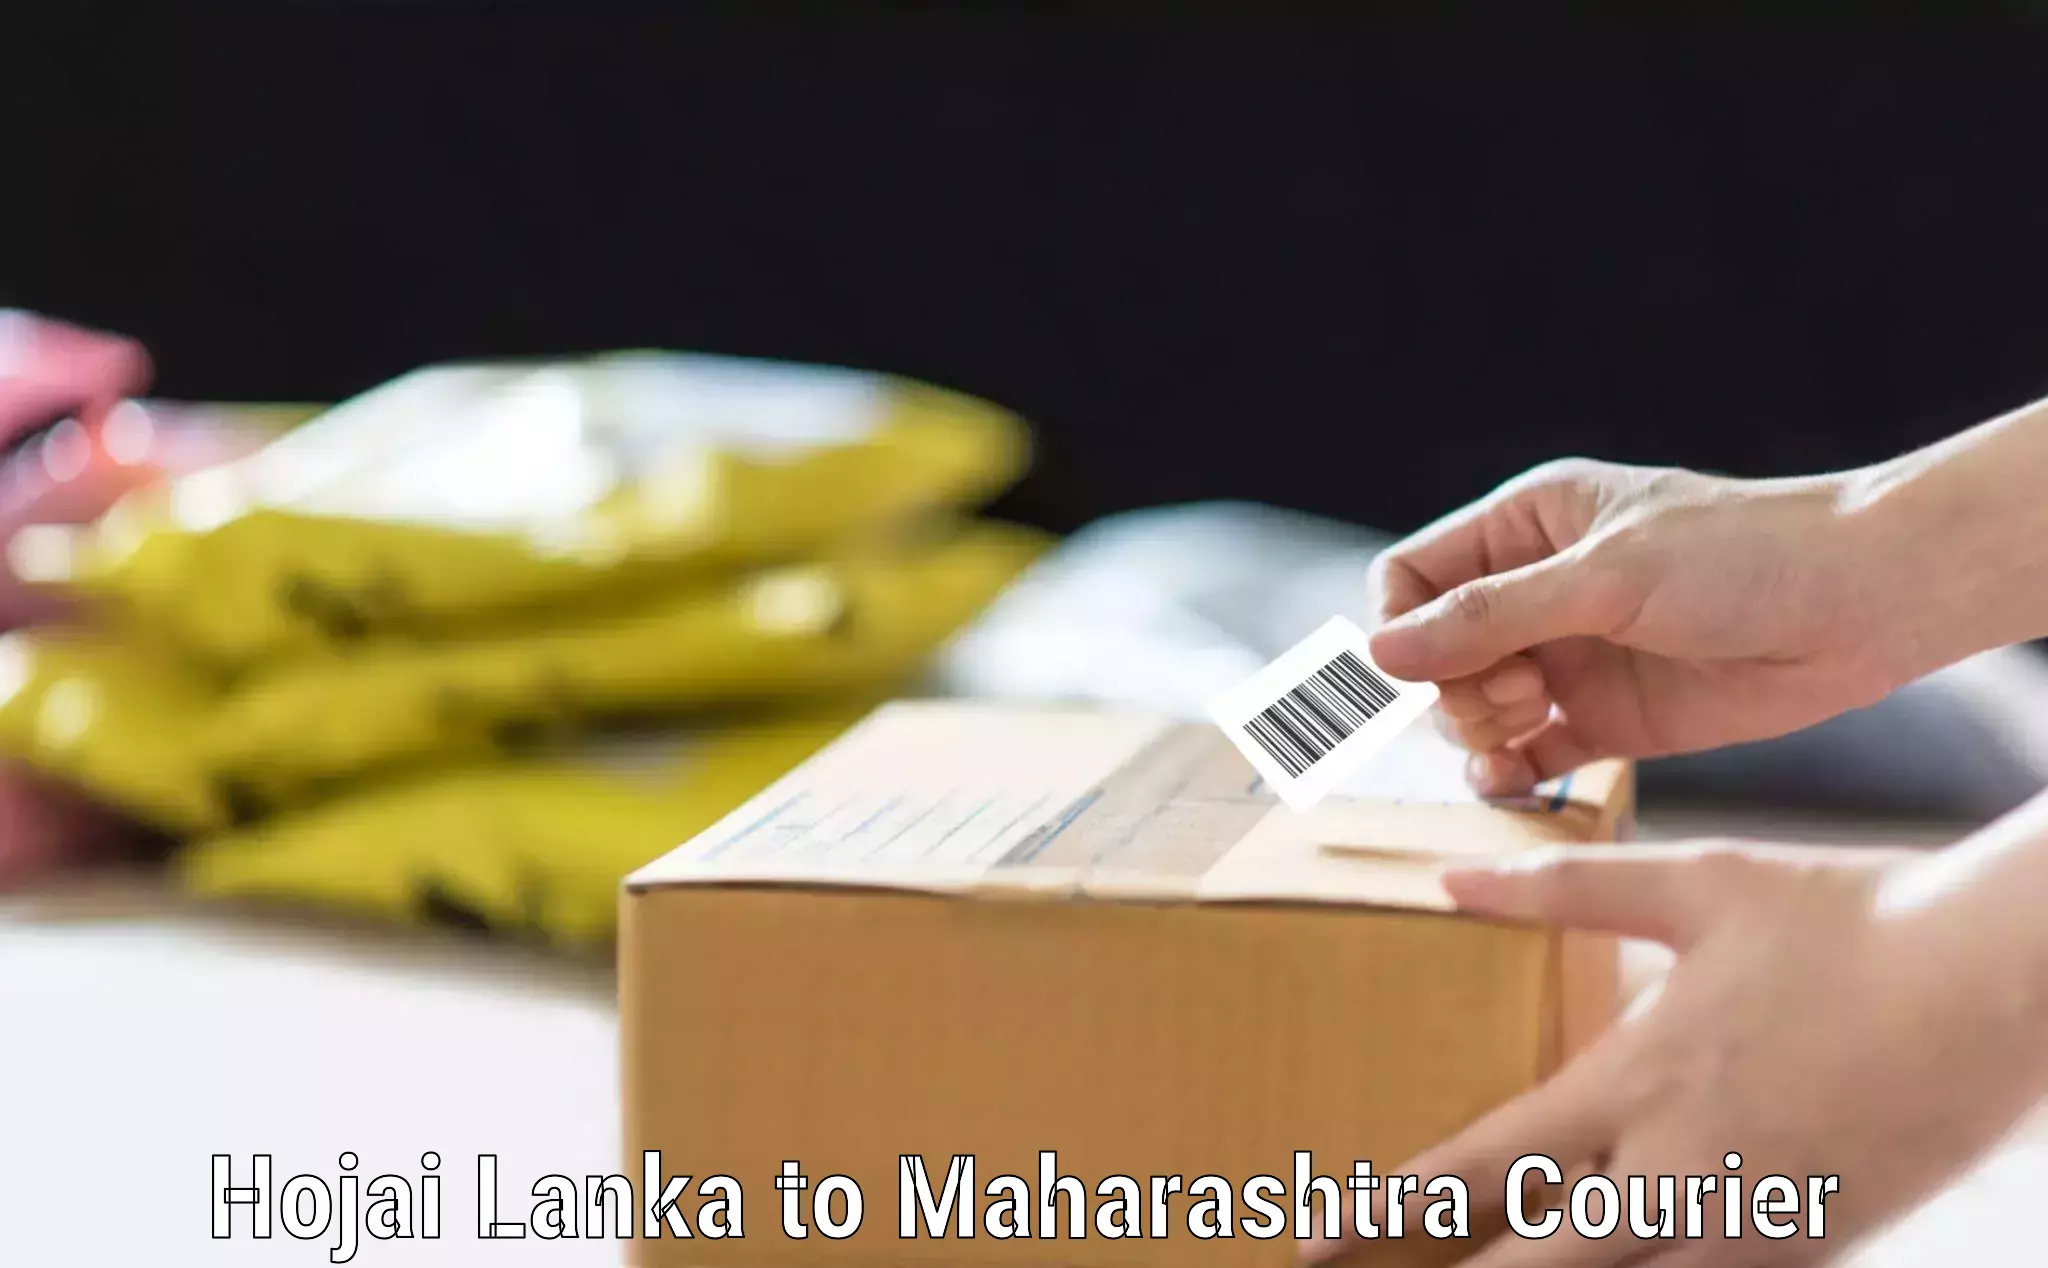 Luggage transfer service Hojai Lanka to Maharashtra